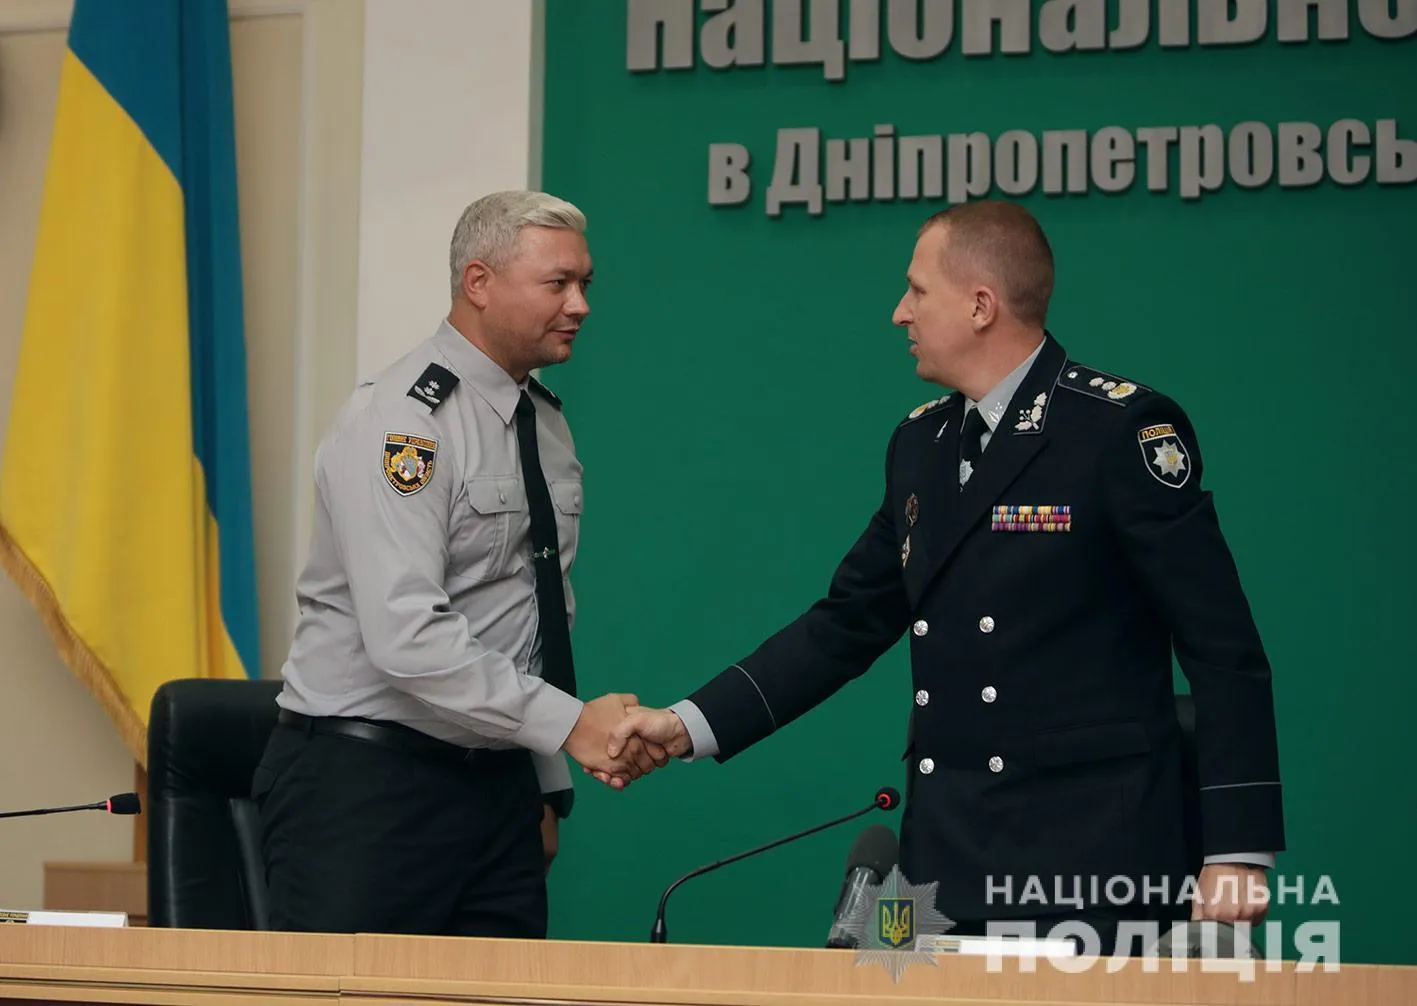 Огурченко поліція Дніпропетровська область